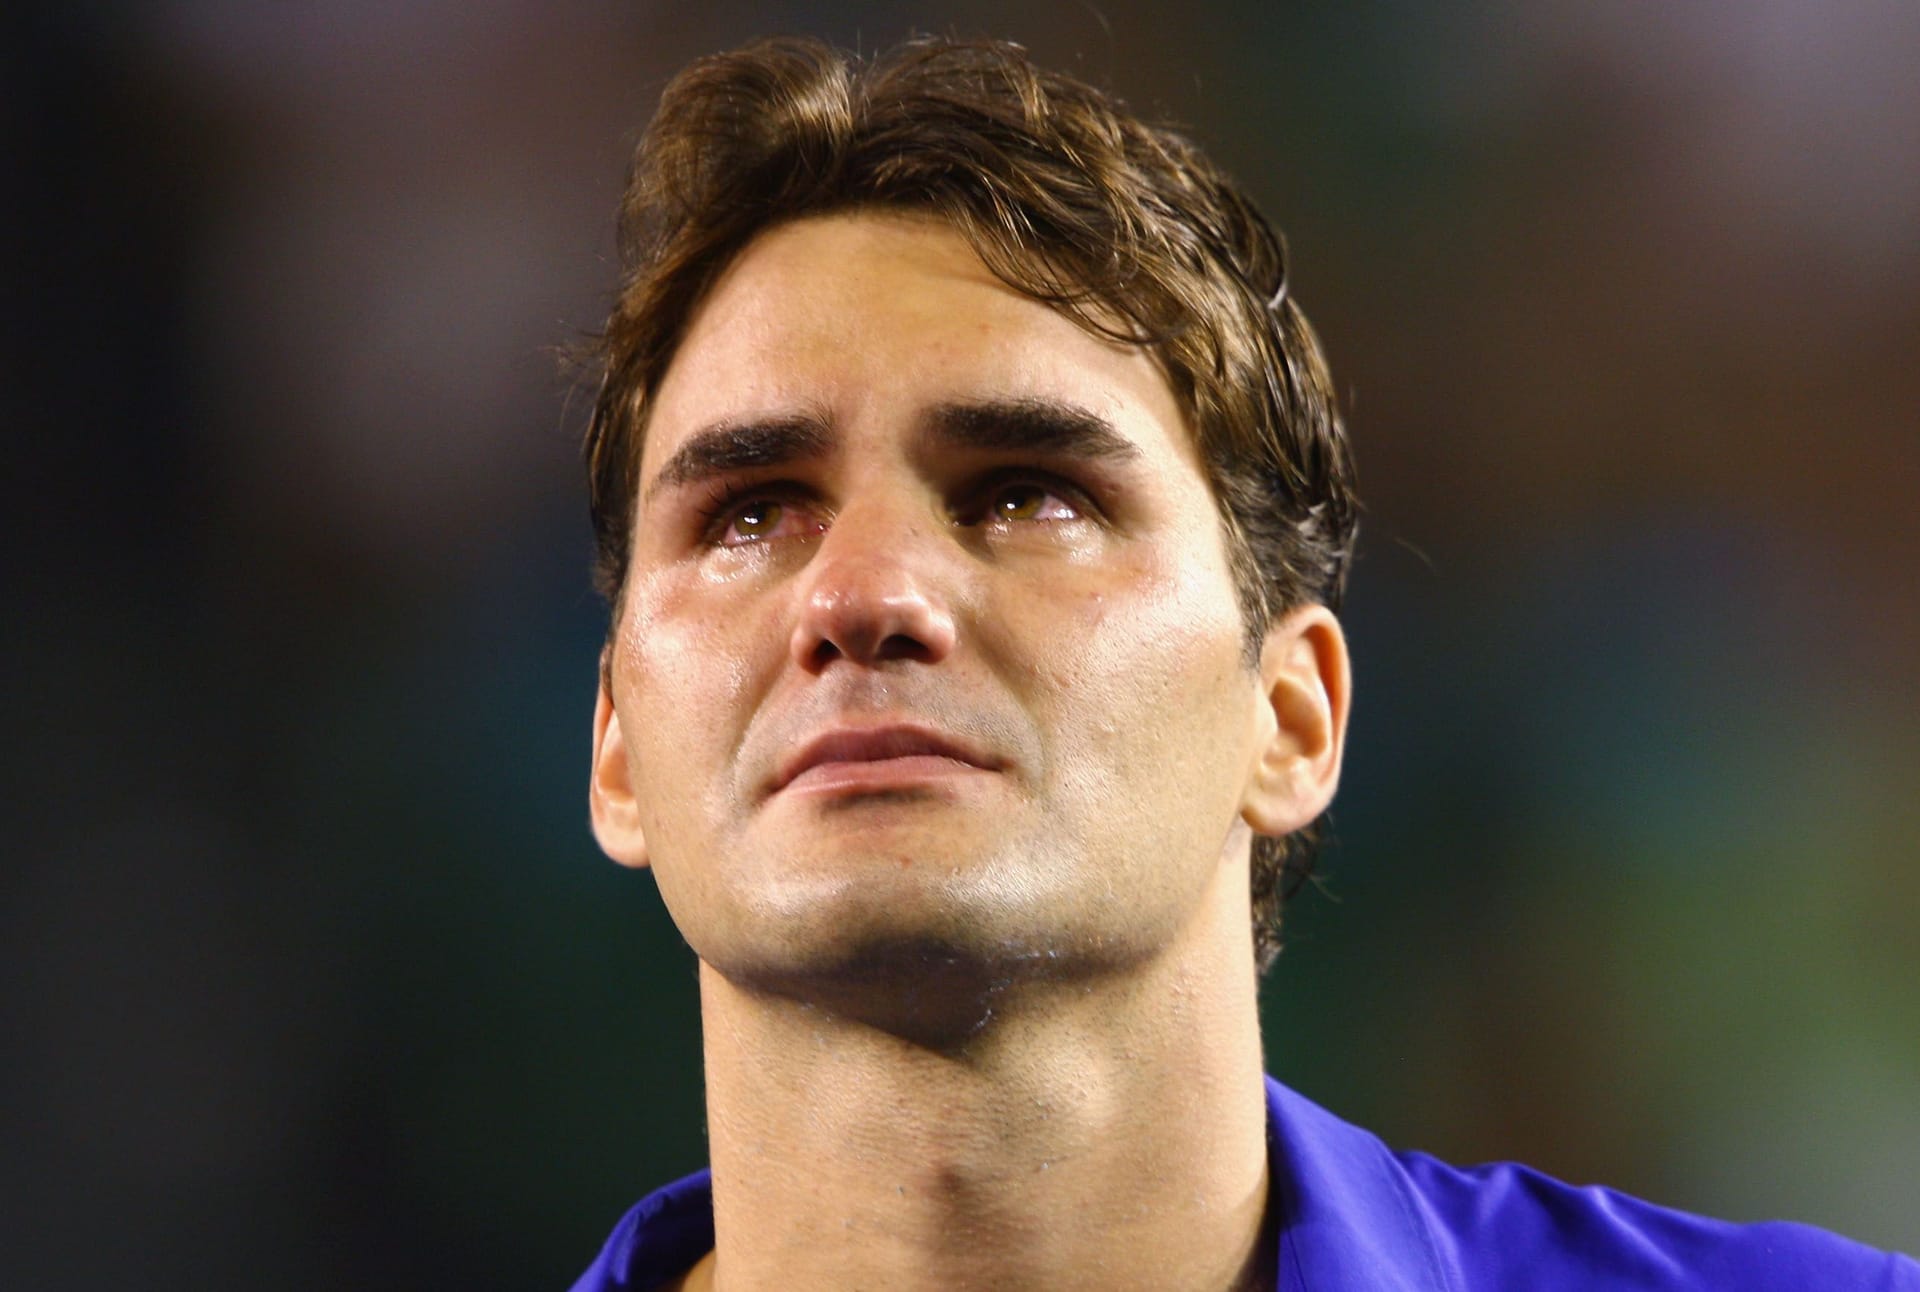 Australian Open 2009: Rafael Nadal, wer sonst? In fünf Sätzen, was sonst? Erneut unterliegt Federer seinem Rivalen in einem spannenden Match und ist bitterlich enttäuscht. Während der Siegerehrung bricht er in Tränen aus, muss seine Rede unterbrechen – und wird von Nadal getröstet.